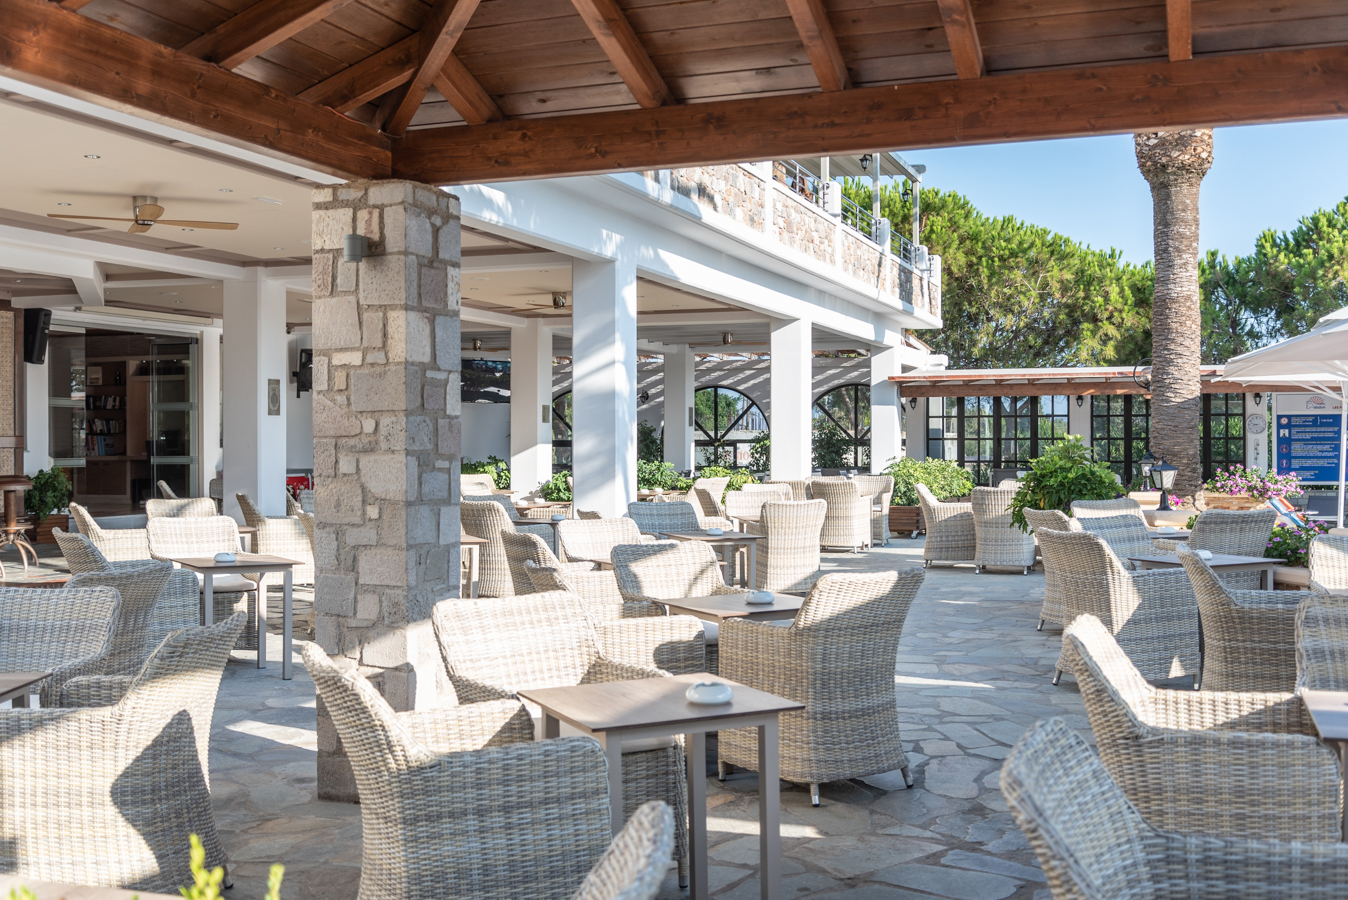 Urlaub auf Kos in Griechenland: Hoteltipp Palladium in Marmari